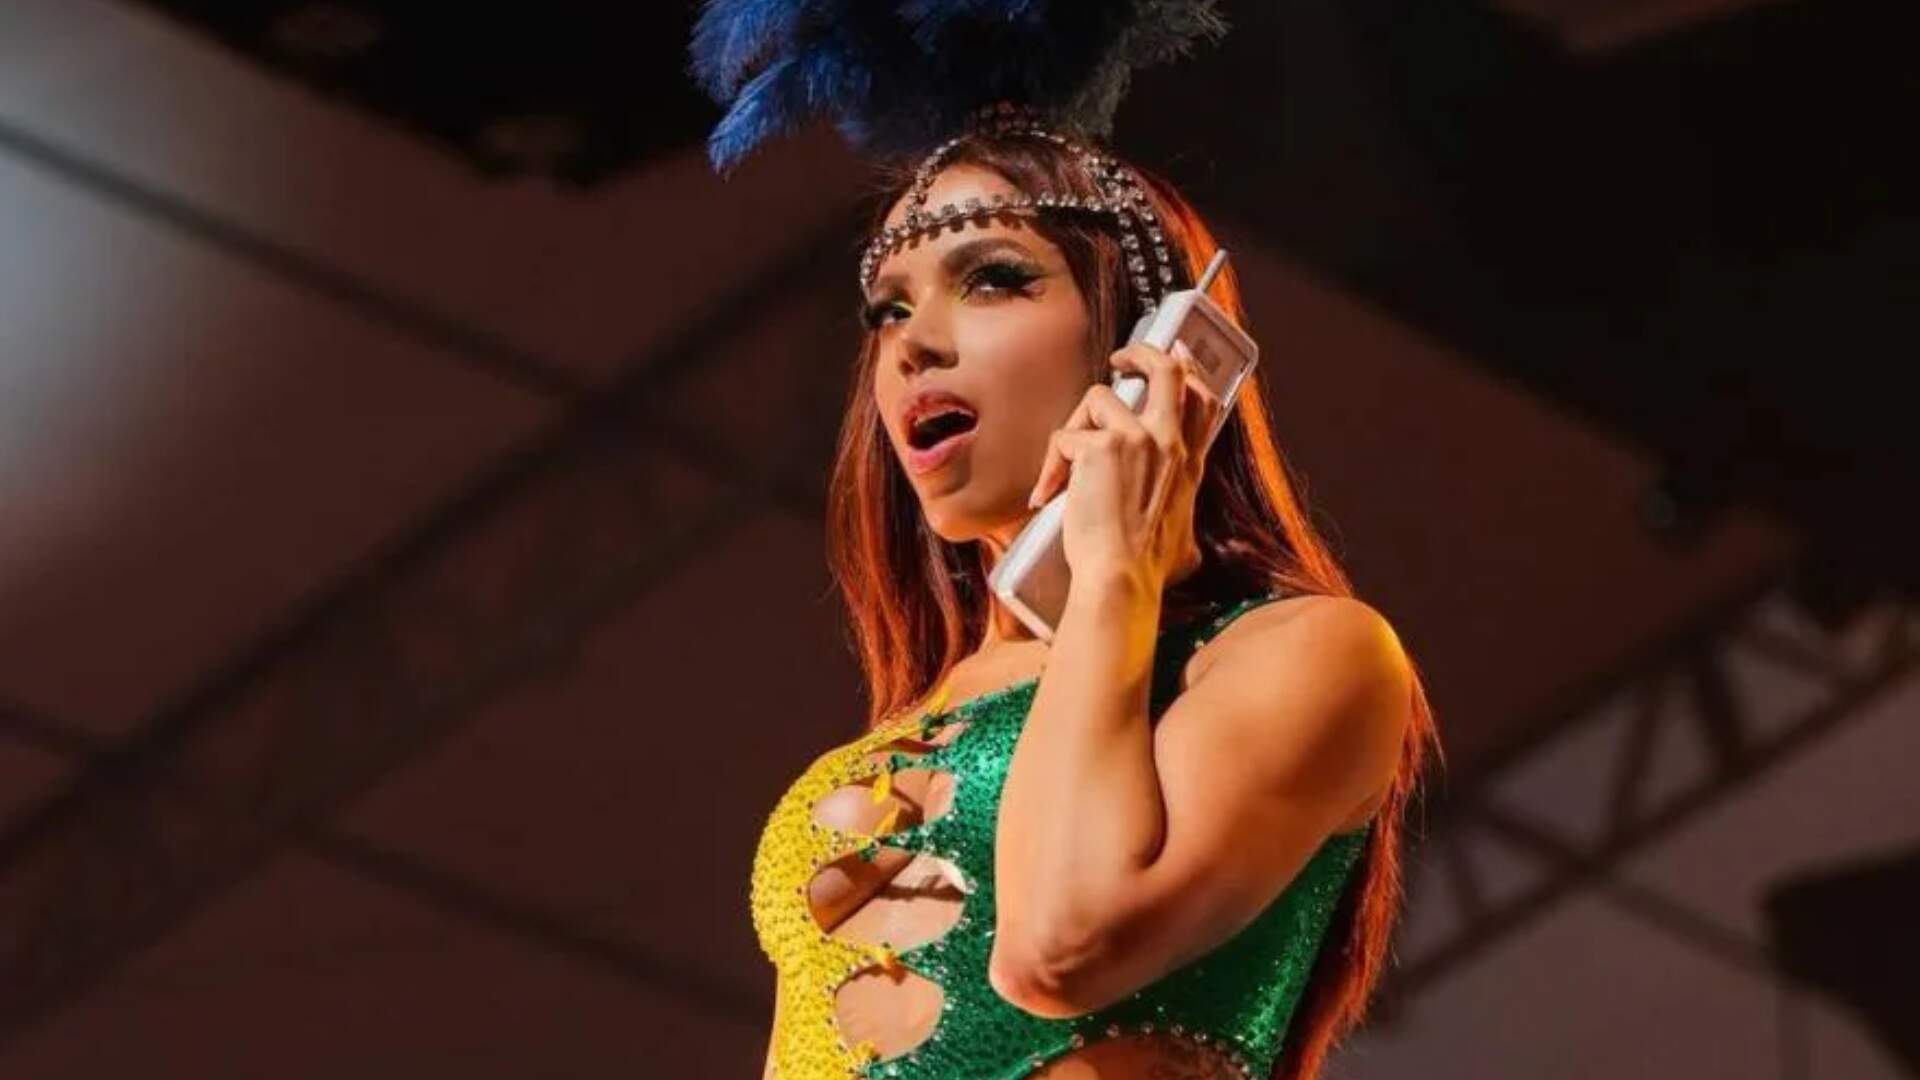 Anitta relembra auge da carreira e fala sobre bastidores do mundo da fama: “Eu era uma pessoa infeliz”